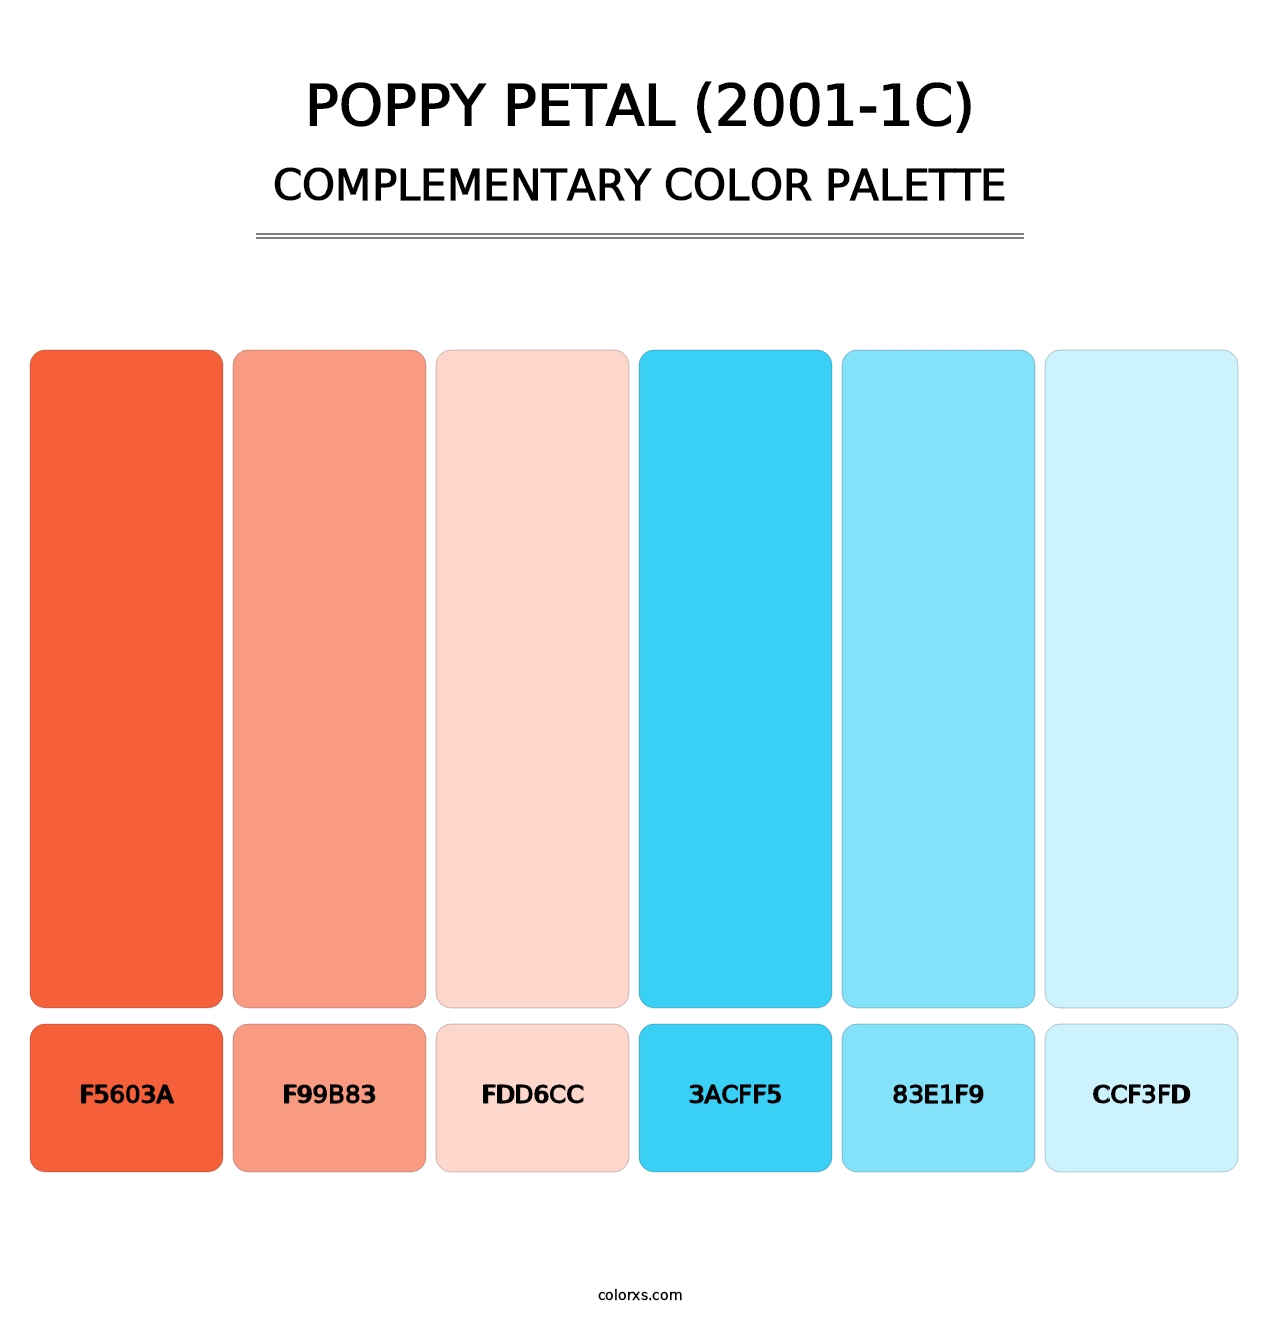 Poppy Petal (2001-1C) - Complementary Color Palette